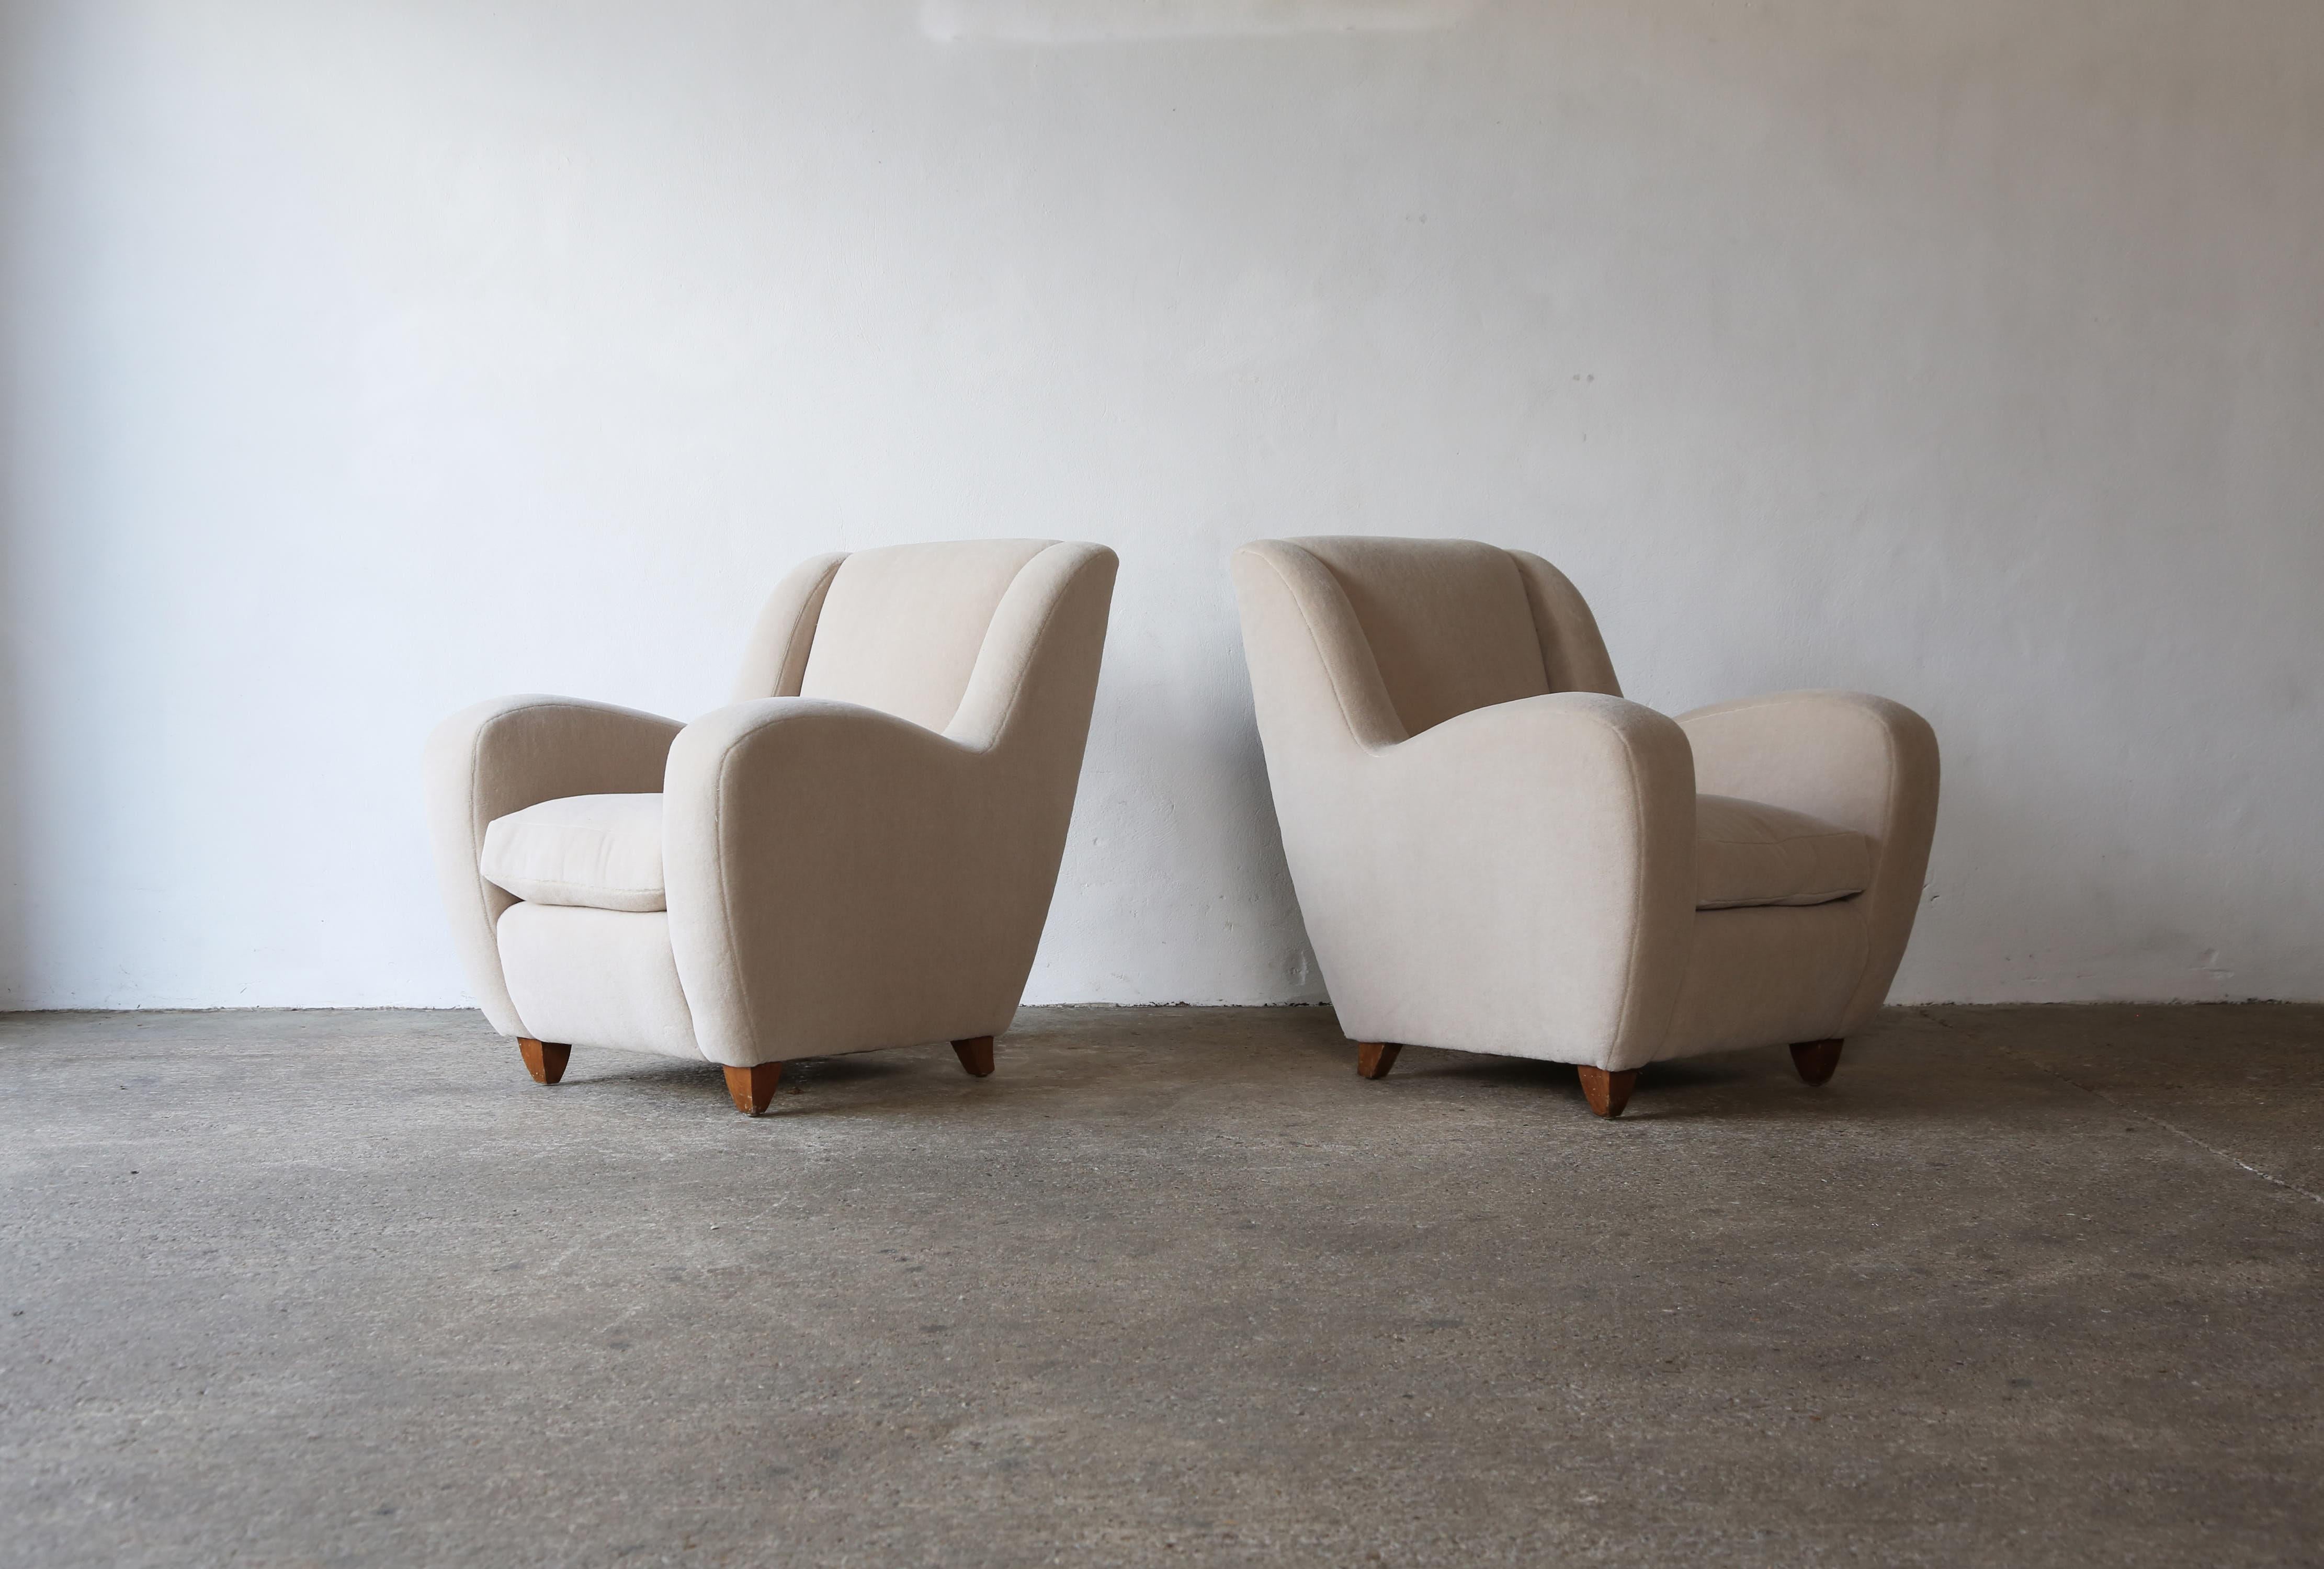 Rare paire de fauteuils Metropolis de Poltrona Frau, première édition, Italie, années 1950. Nouvellement tapissé d'un tissu en pure laine d'alpaga, doux et de première qualité, fabriqué sur mesure.  Expédition rapide dans le monde entier.
  


